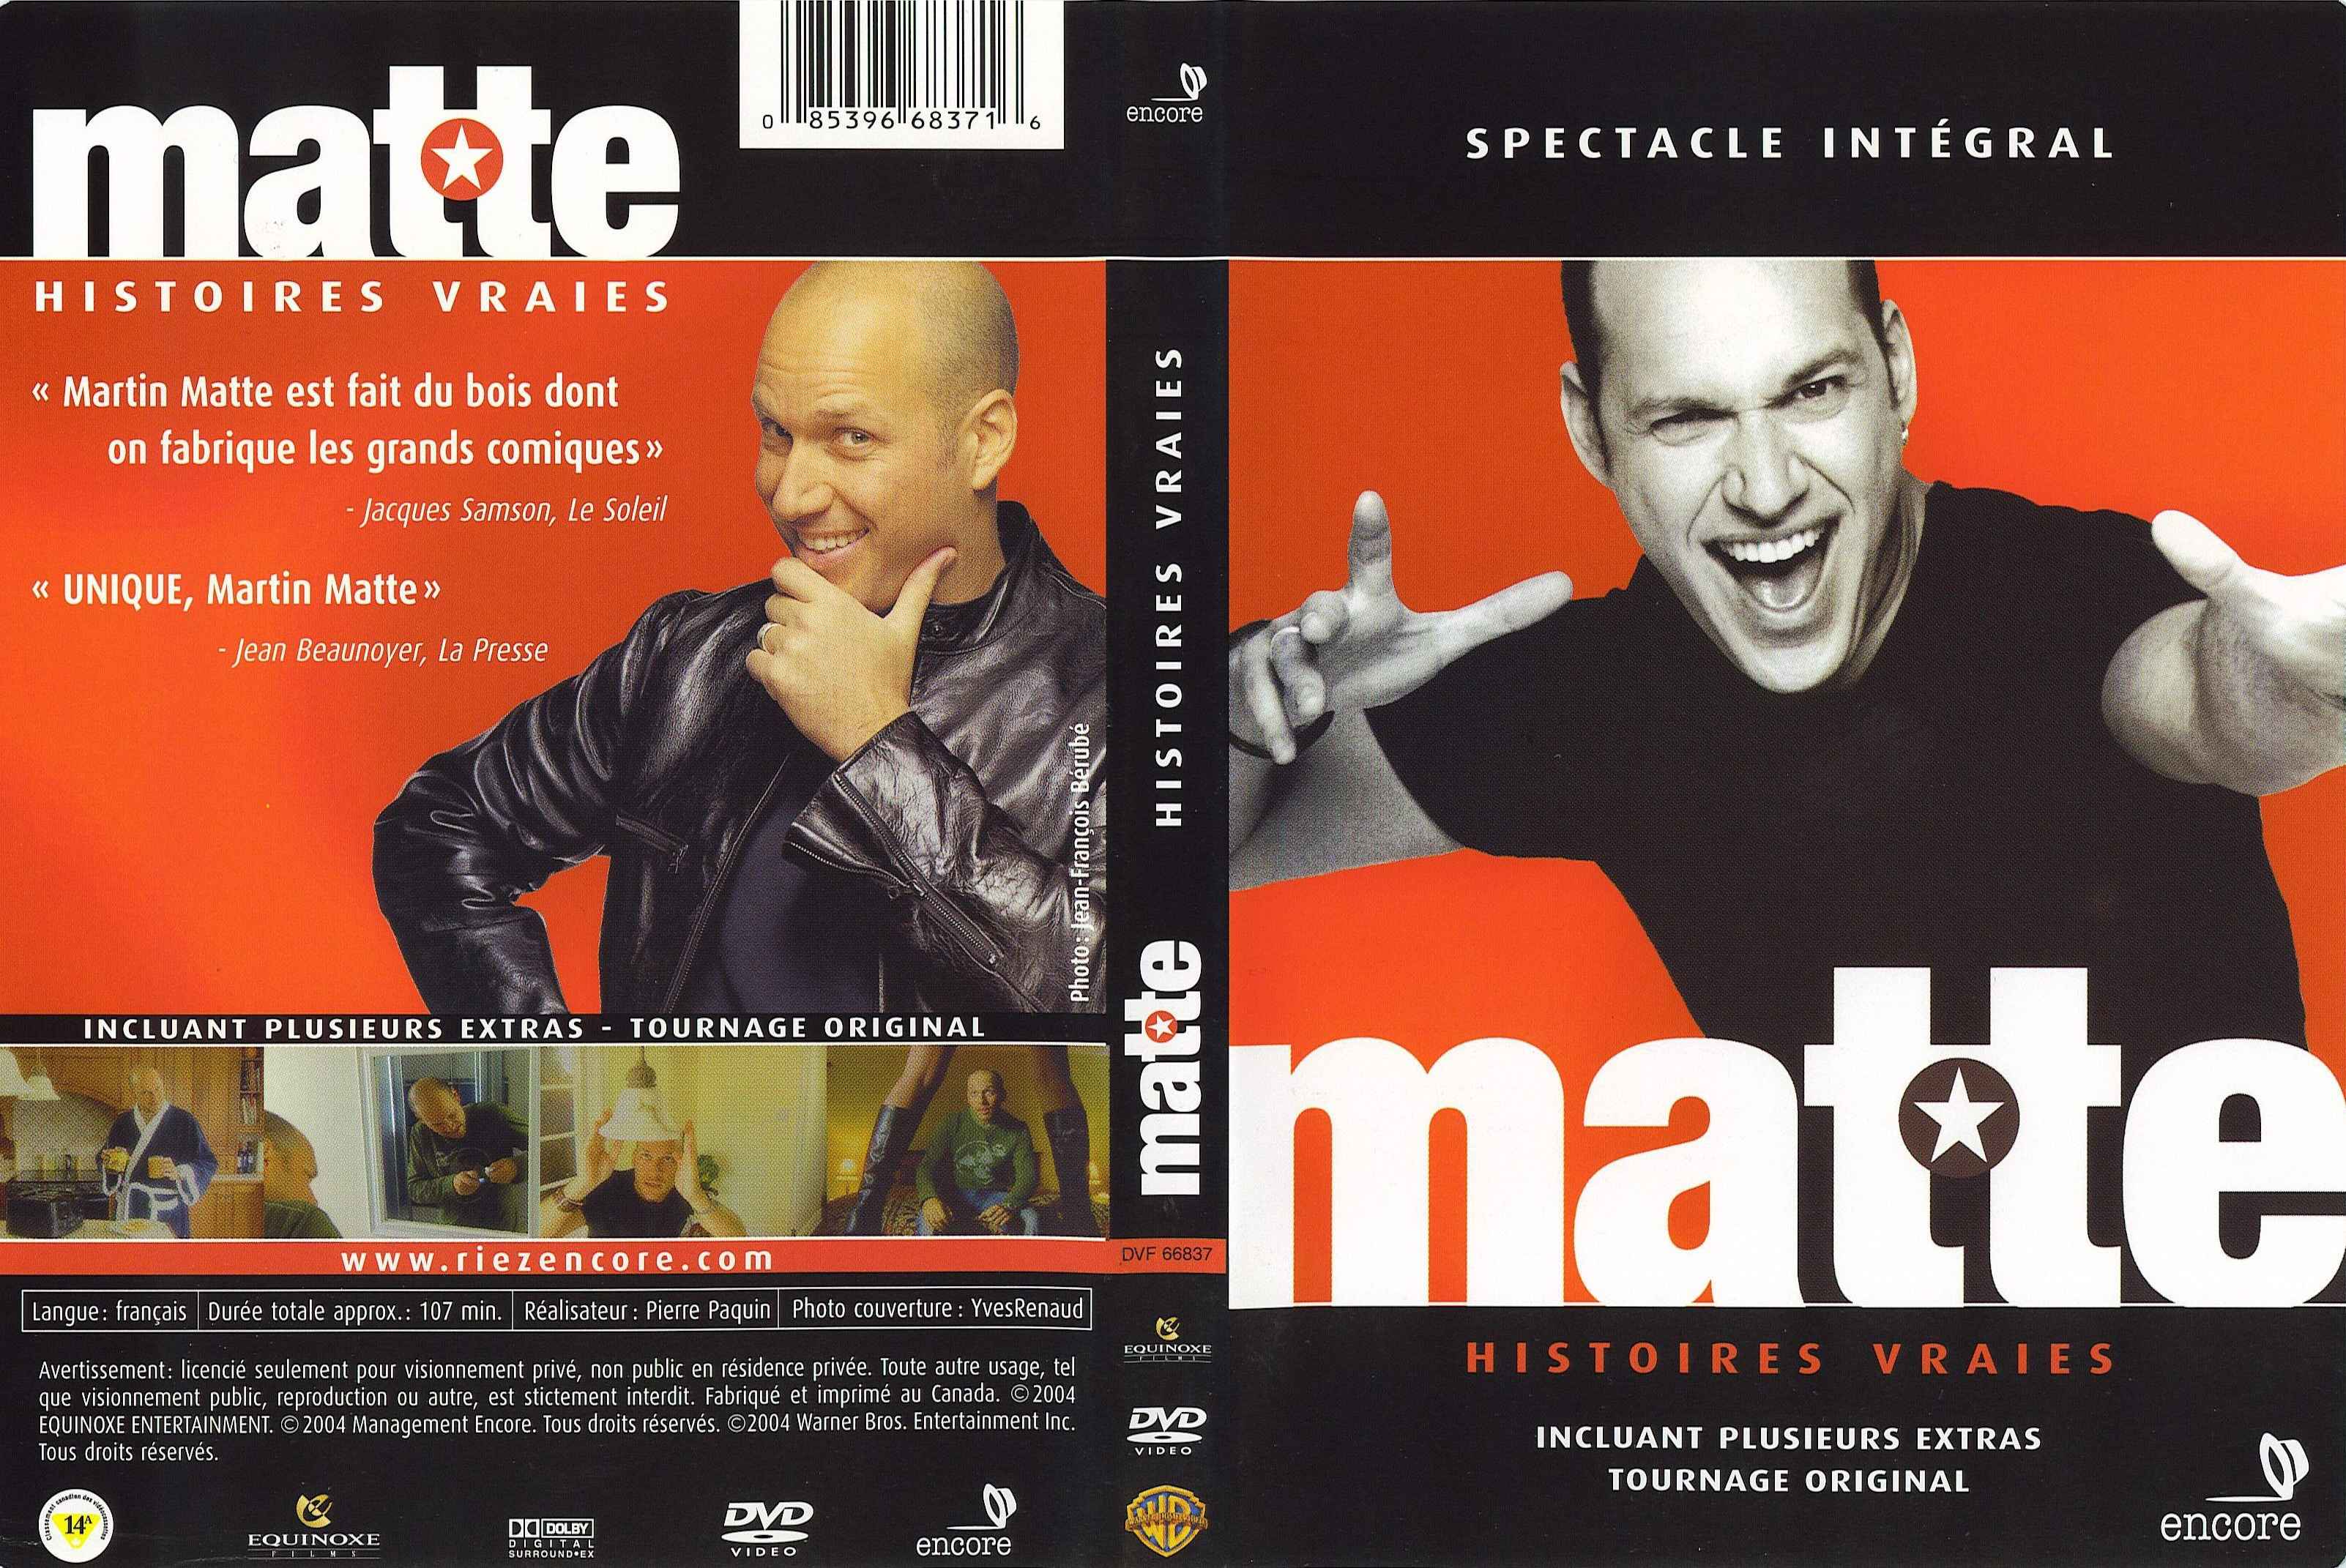 Jaquette DVD Martin Matte histoires vraies